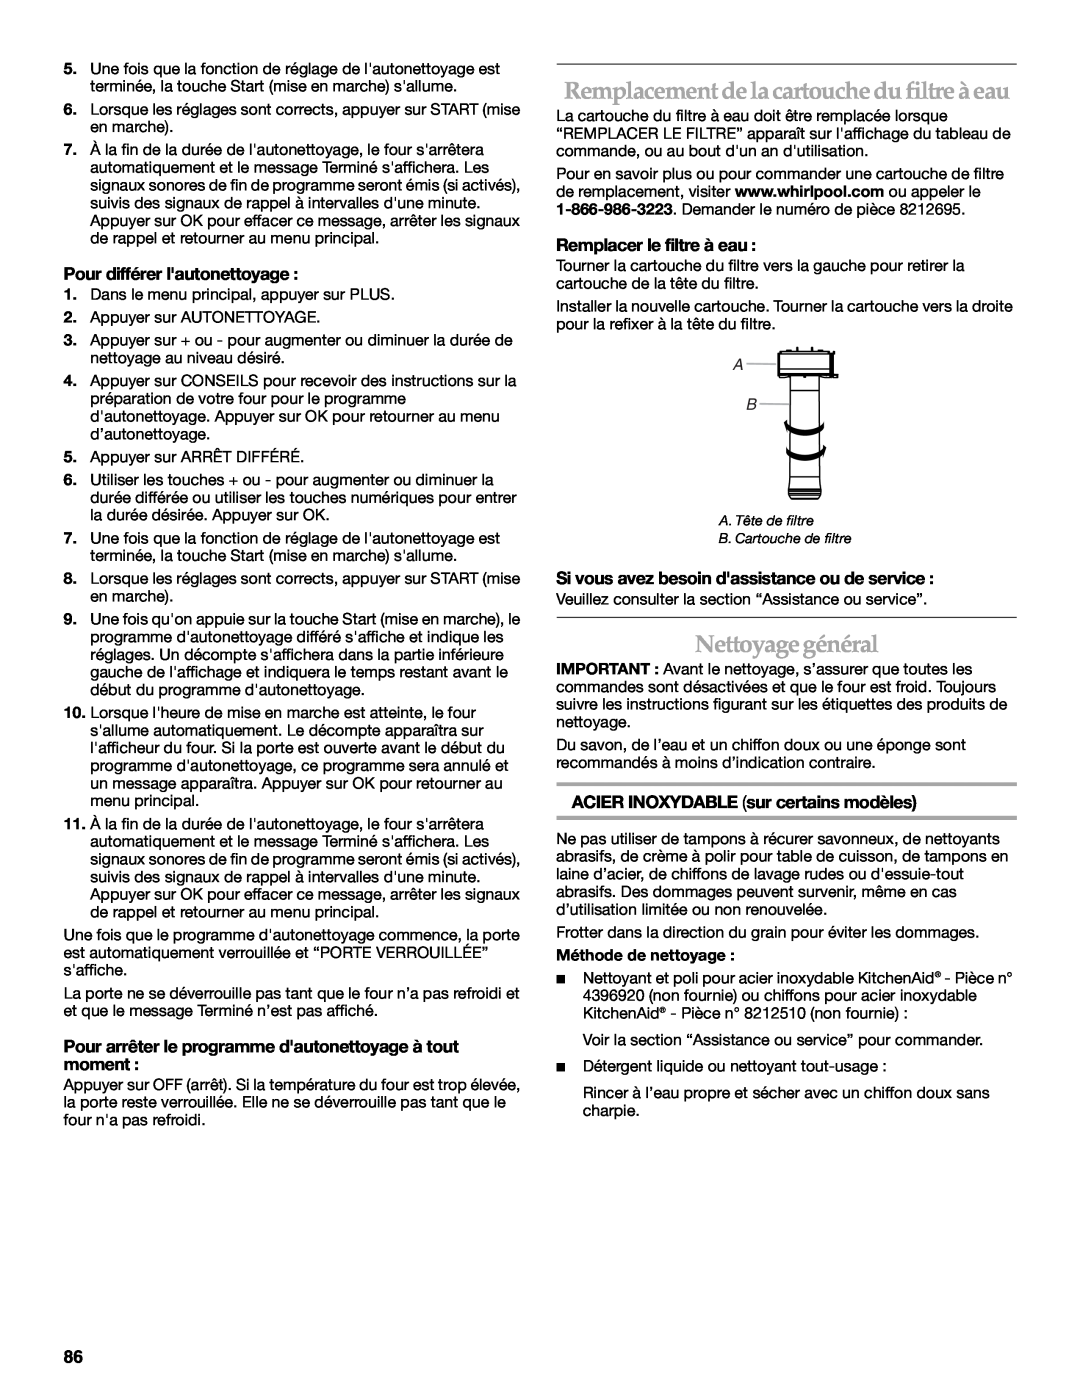 KitchenAid KDRU763.KDRU manual Remplacement delacartouchedu filtre à eau, Nettoyagegénéral, Pour différer lautonettoyage 